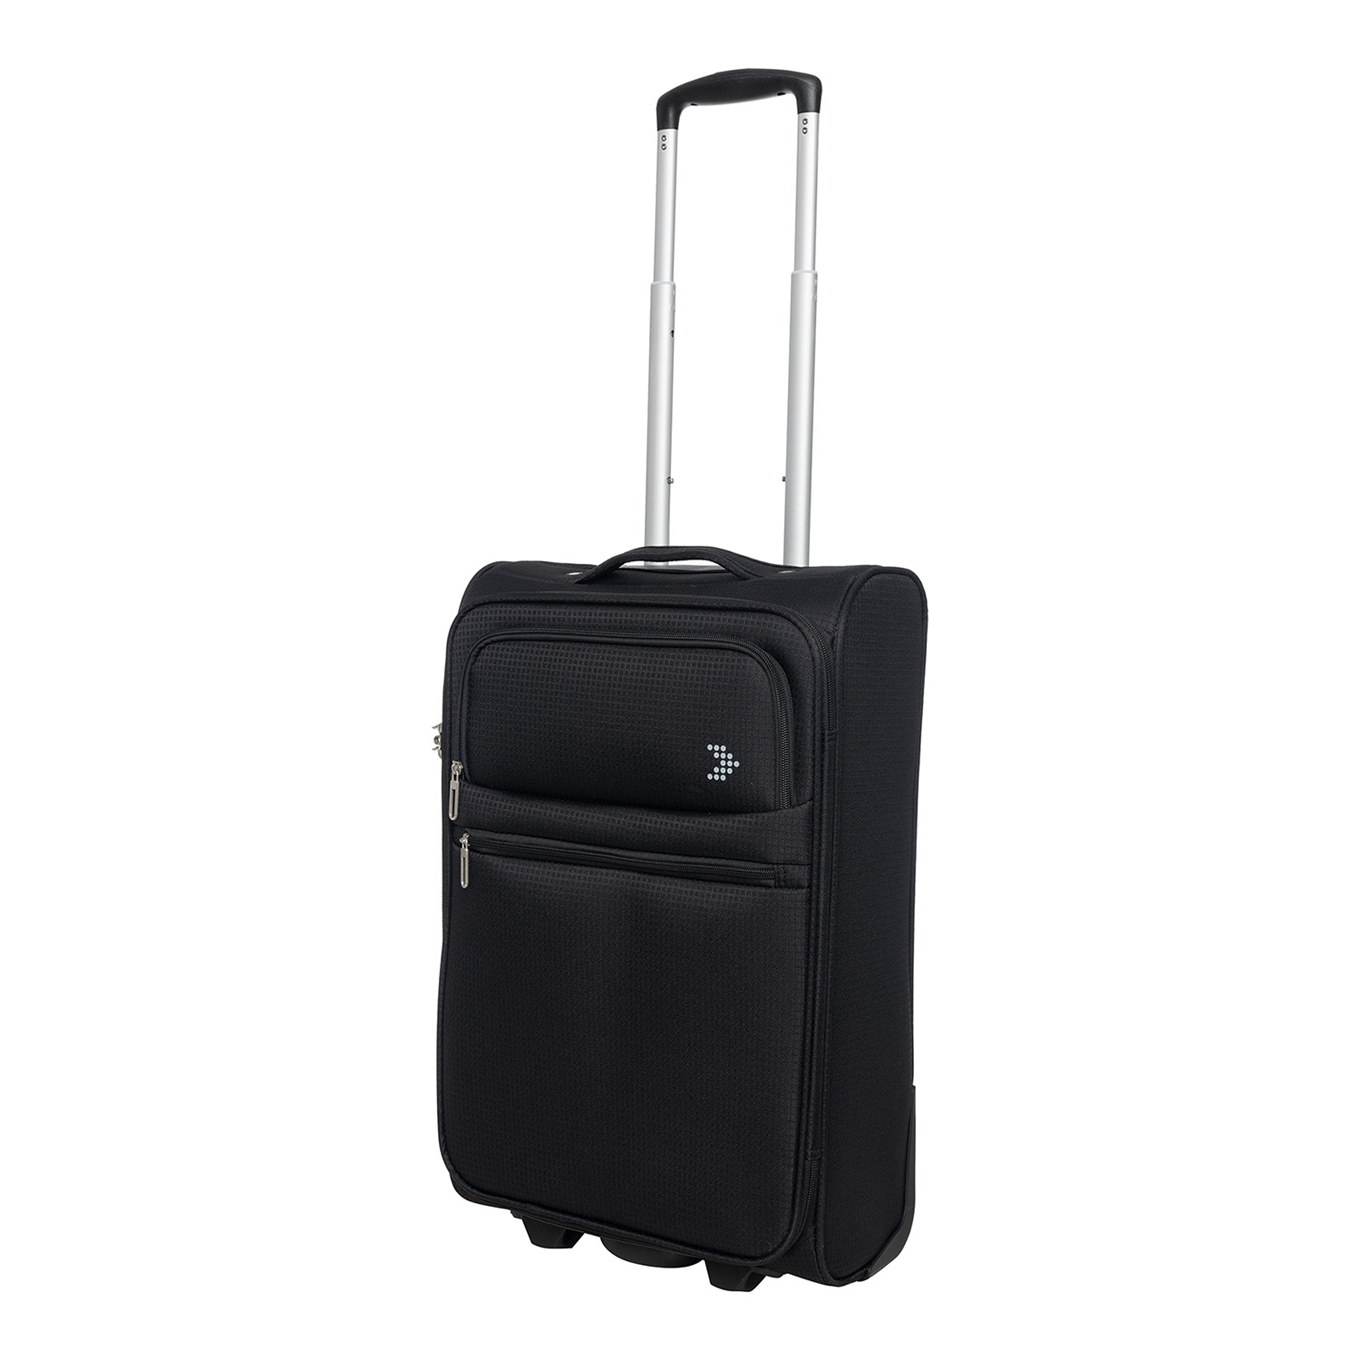 Op grote schaal verbannen Danser Handbagage regels per luchtvaartmaatschappij | Travelbags.nl